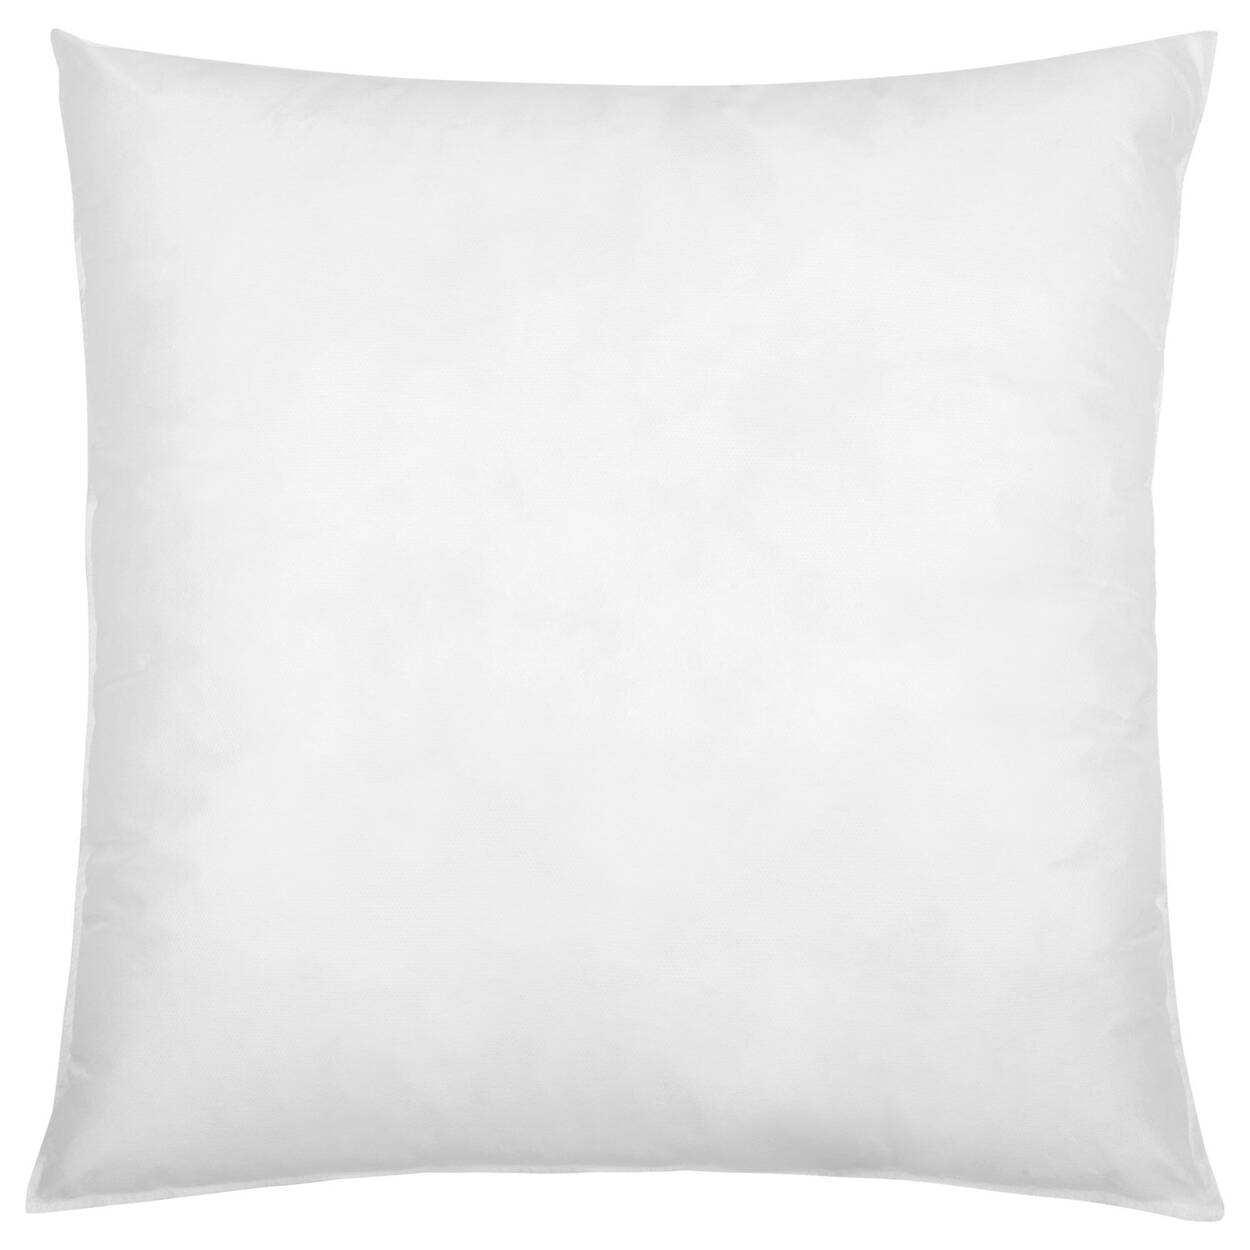 Pillow Insert | Bouclair Canada